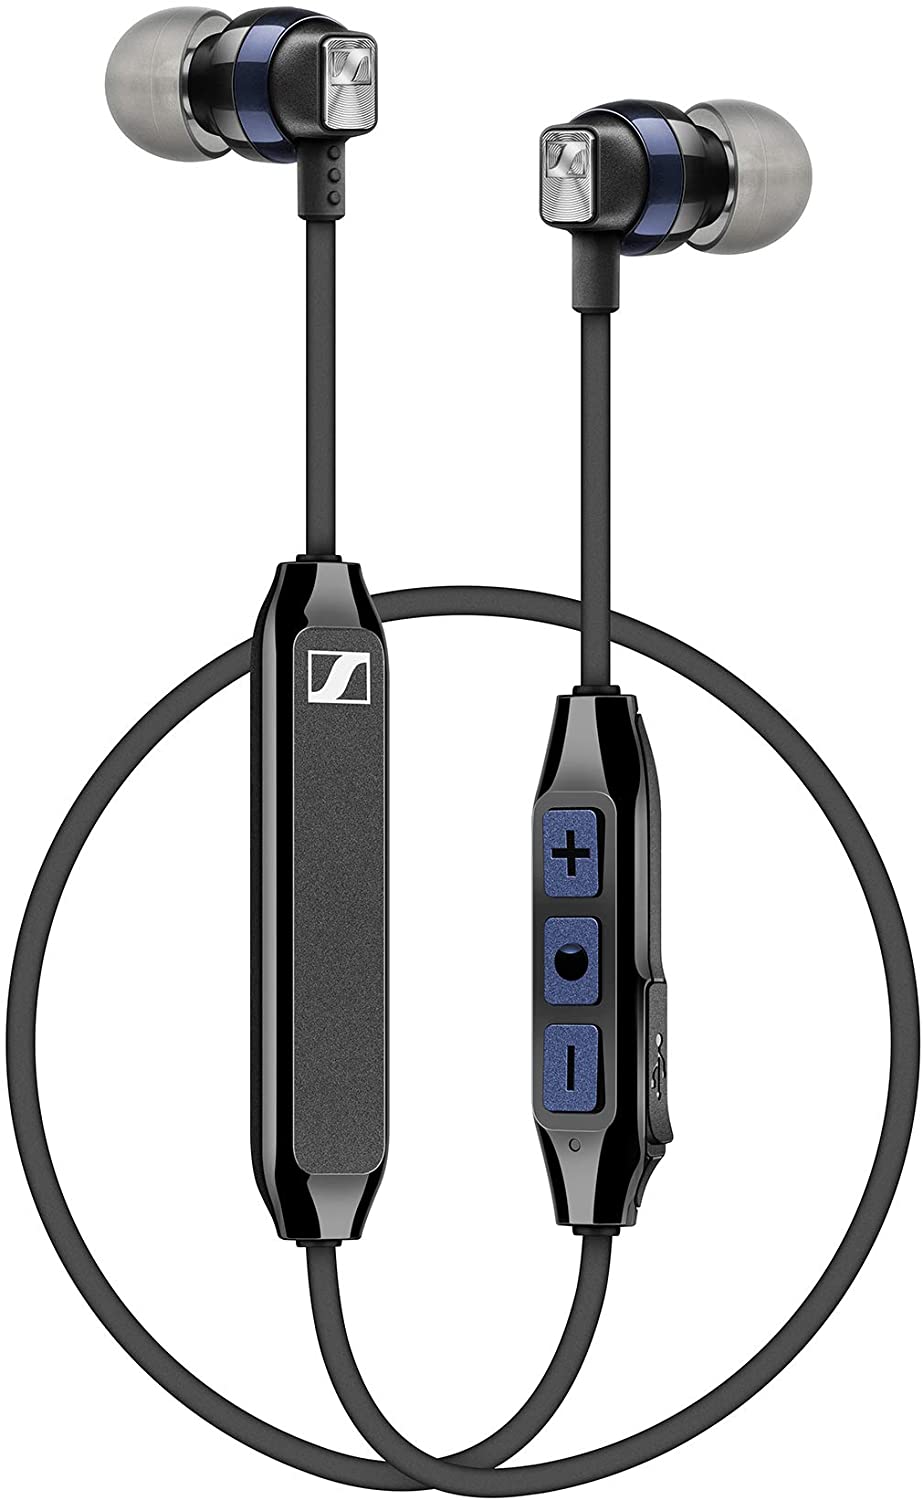 Sennheiser CX 6.00BT In-Ear Wireless